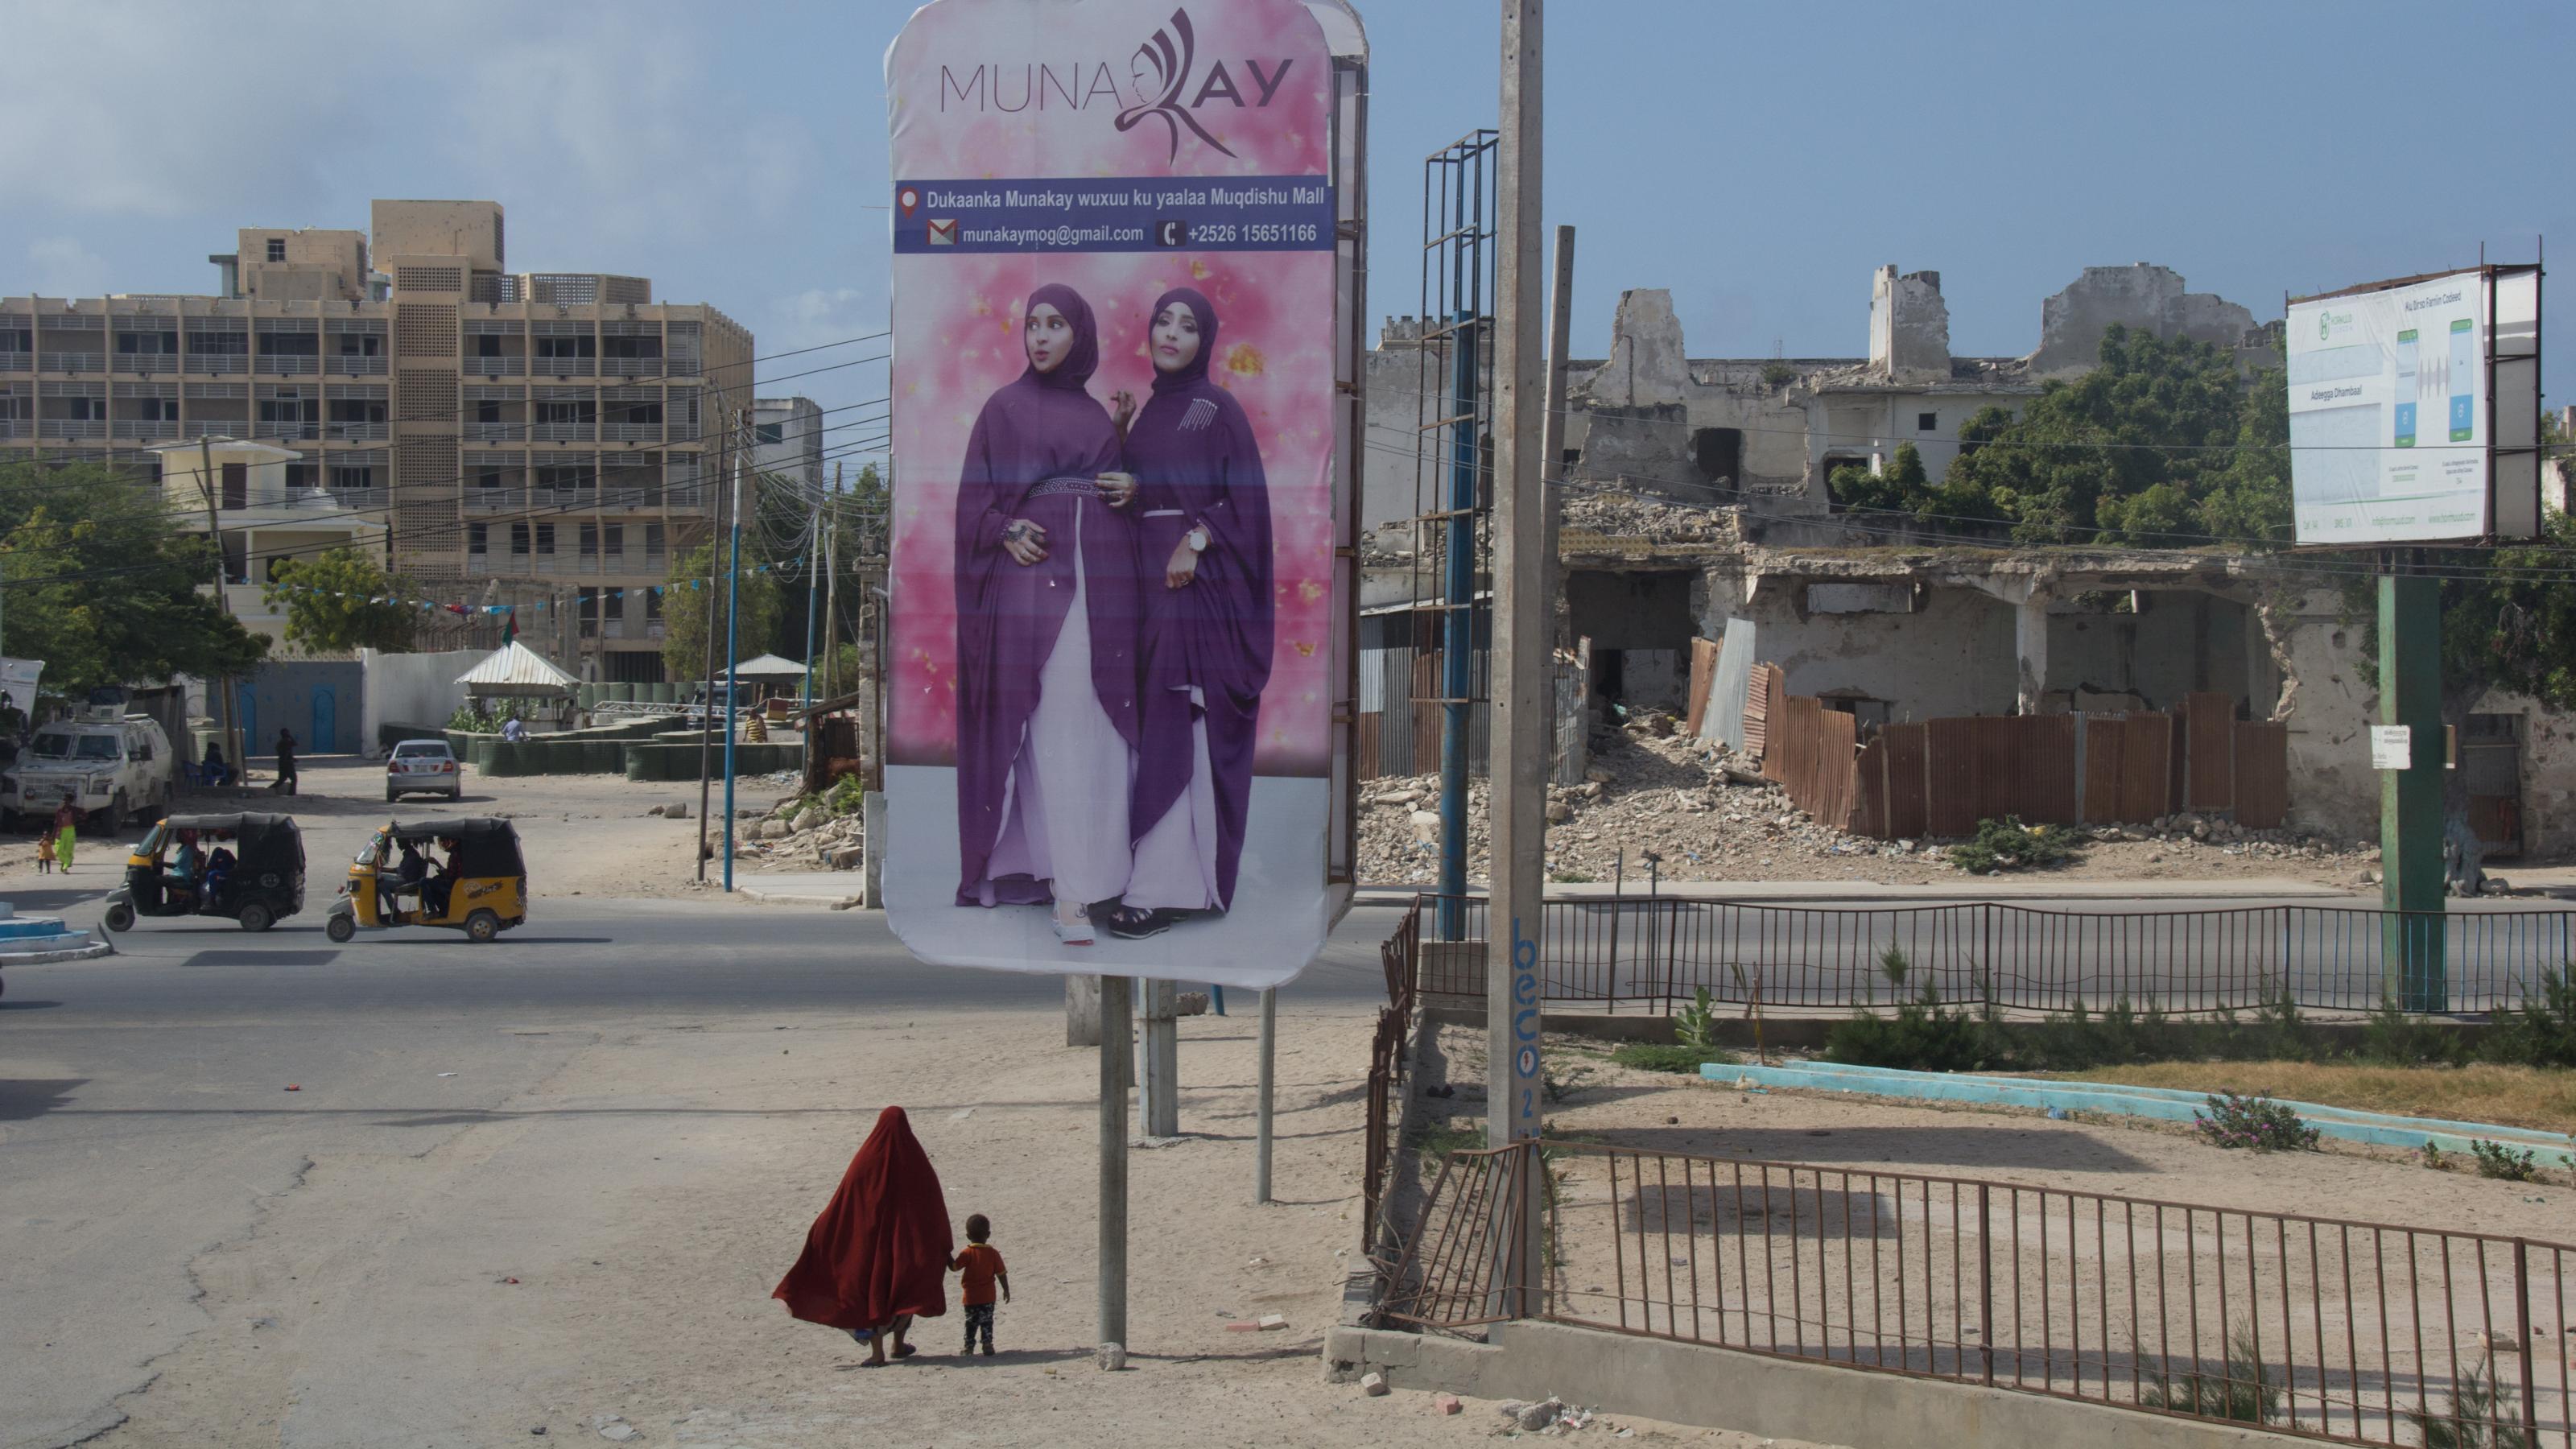 Zu sehen ist ein riesiges Werbeplakat mit zwei Frauen, die Kopftuch tragen. Darunter winzig klein von hinten eine Frau mit Kopftuch, an der Hand ein Kind. Im Hintergrund Ruinen.